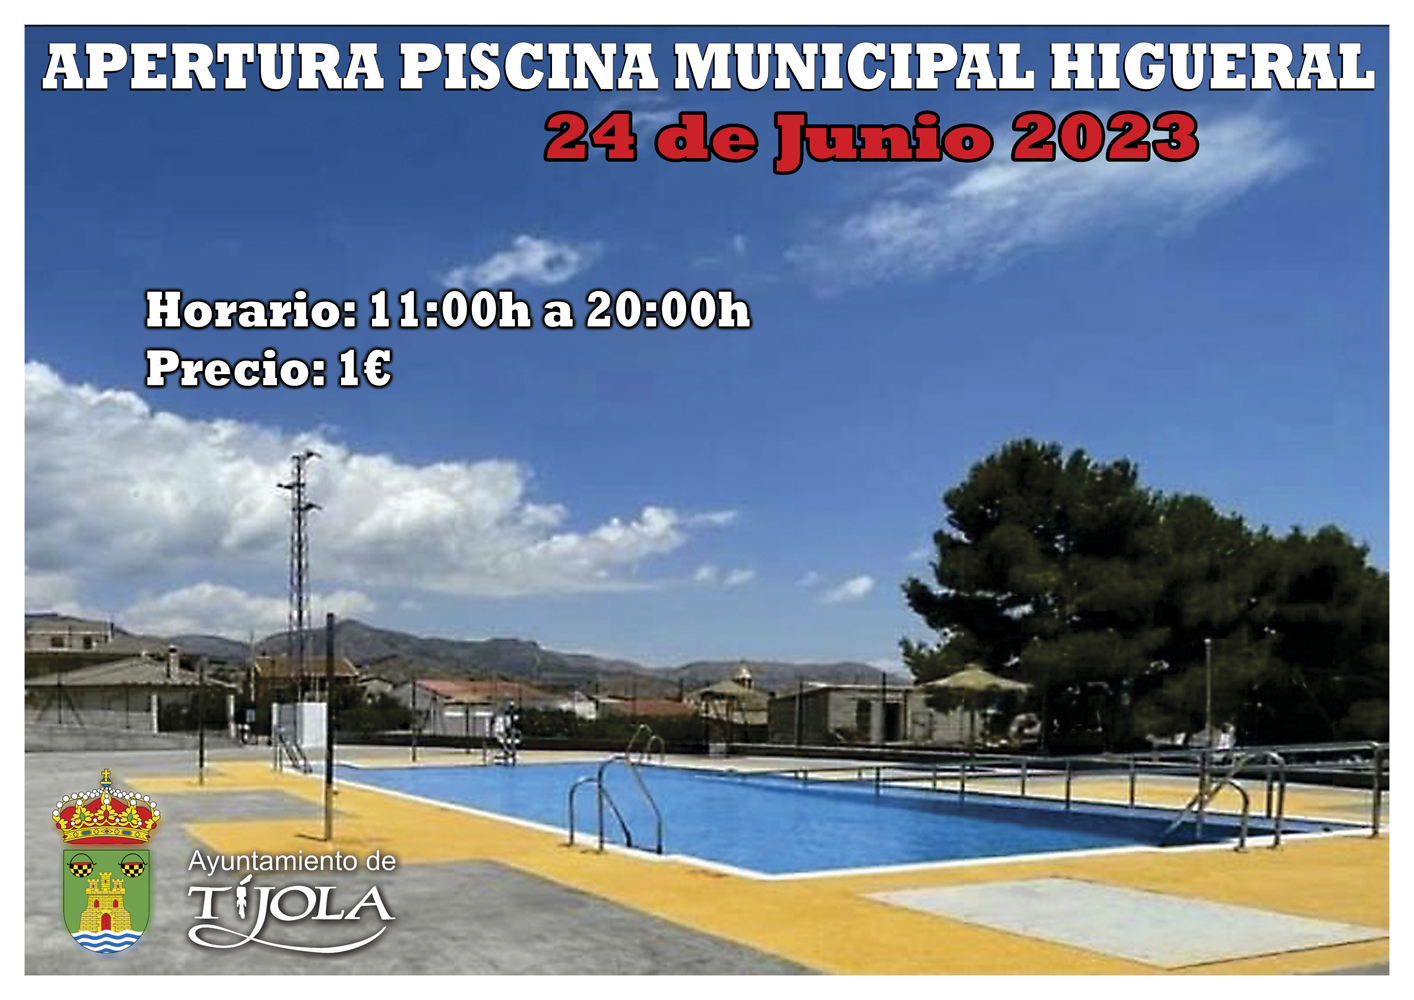 Imagen del Cartel de la Apertura de la Piscina Municipal en Higueral con imagen de la piscina al fondo.